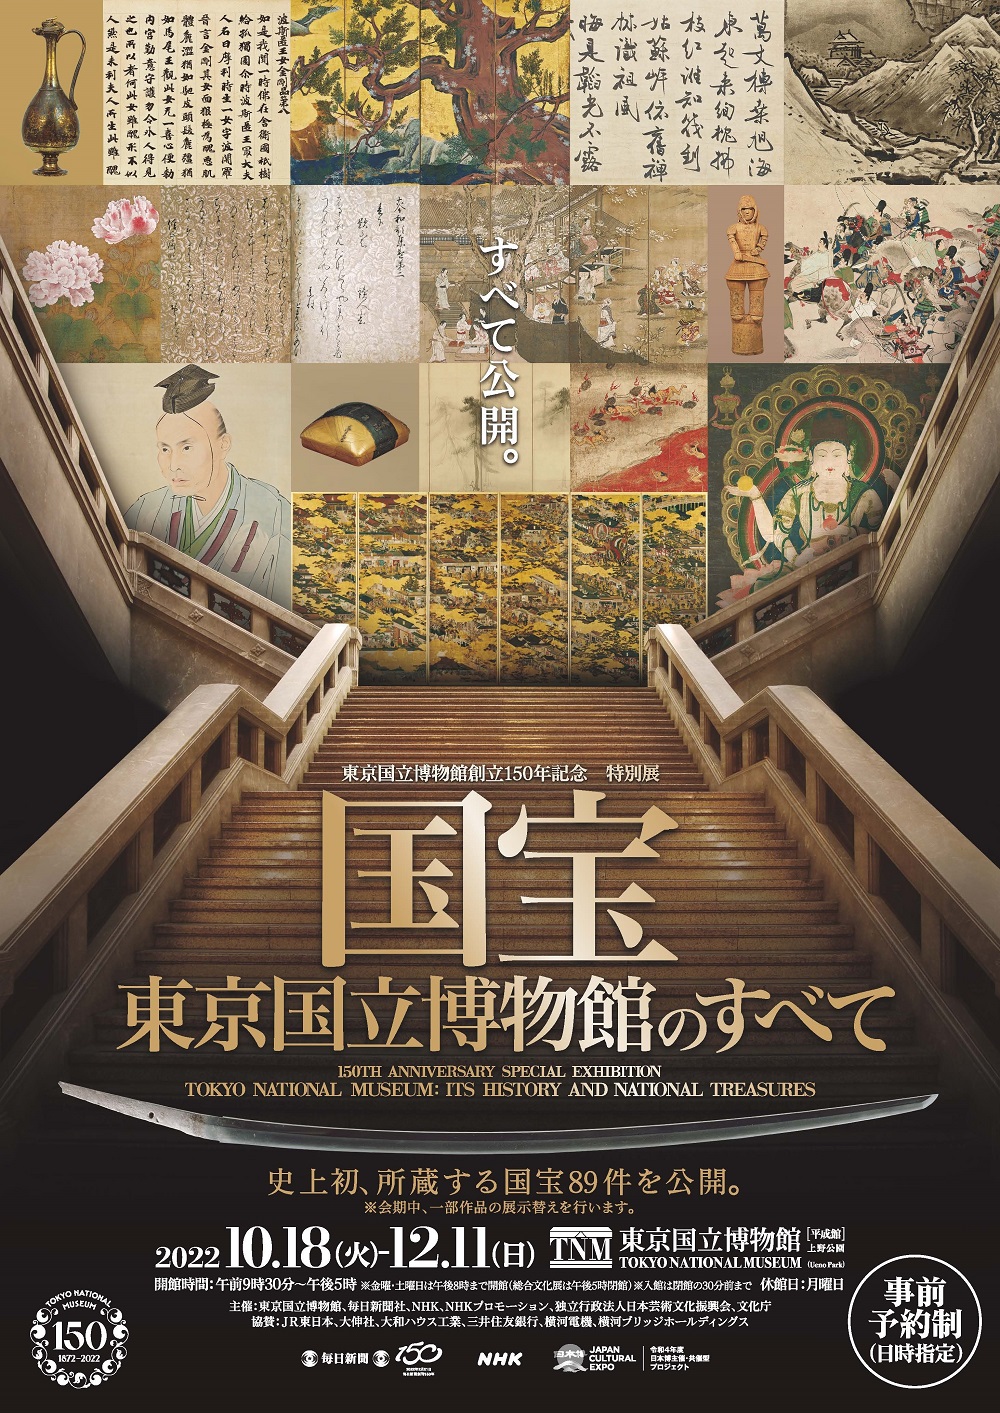 東京国立博物館創立150年記念 特別展「国宝 東京国立博物館のすべて